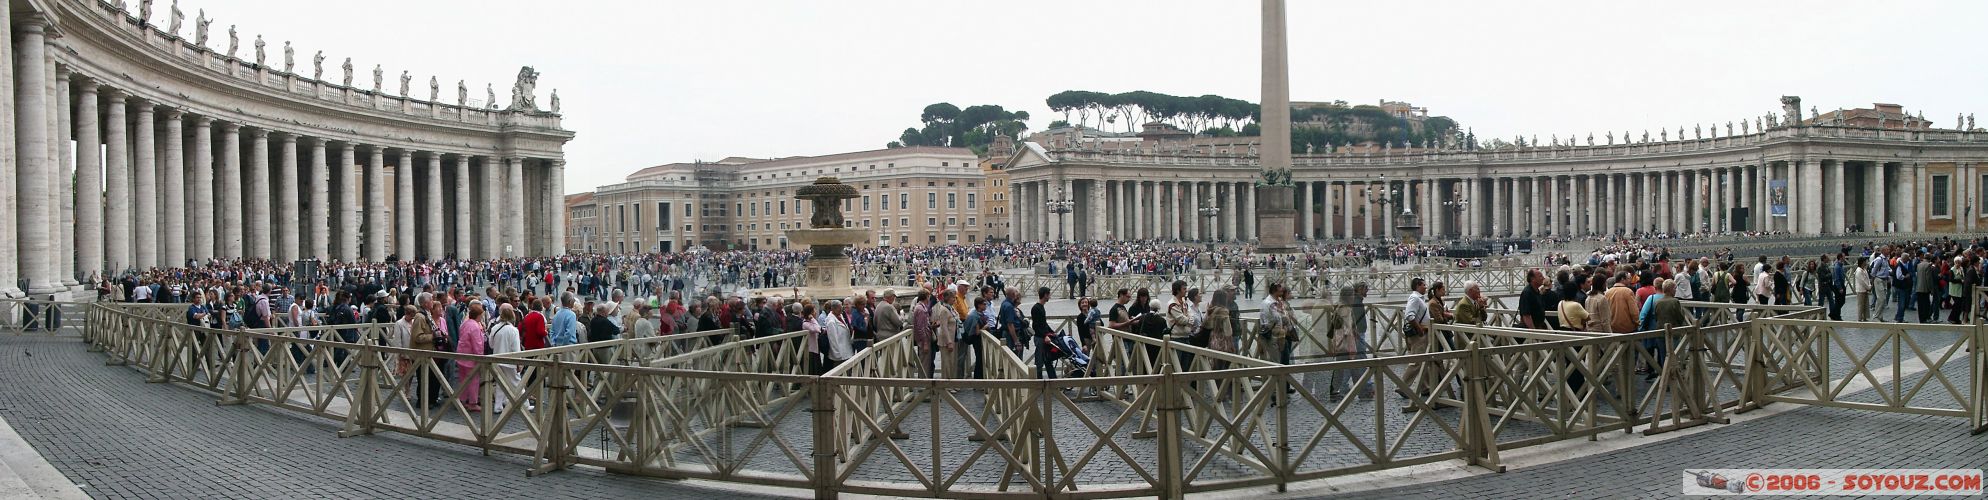 panoramique de la piazza Santo Pietro
